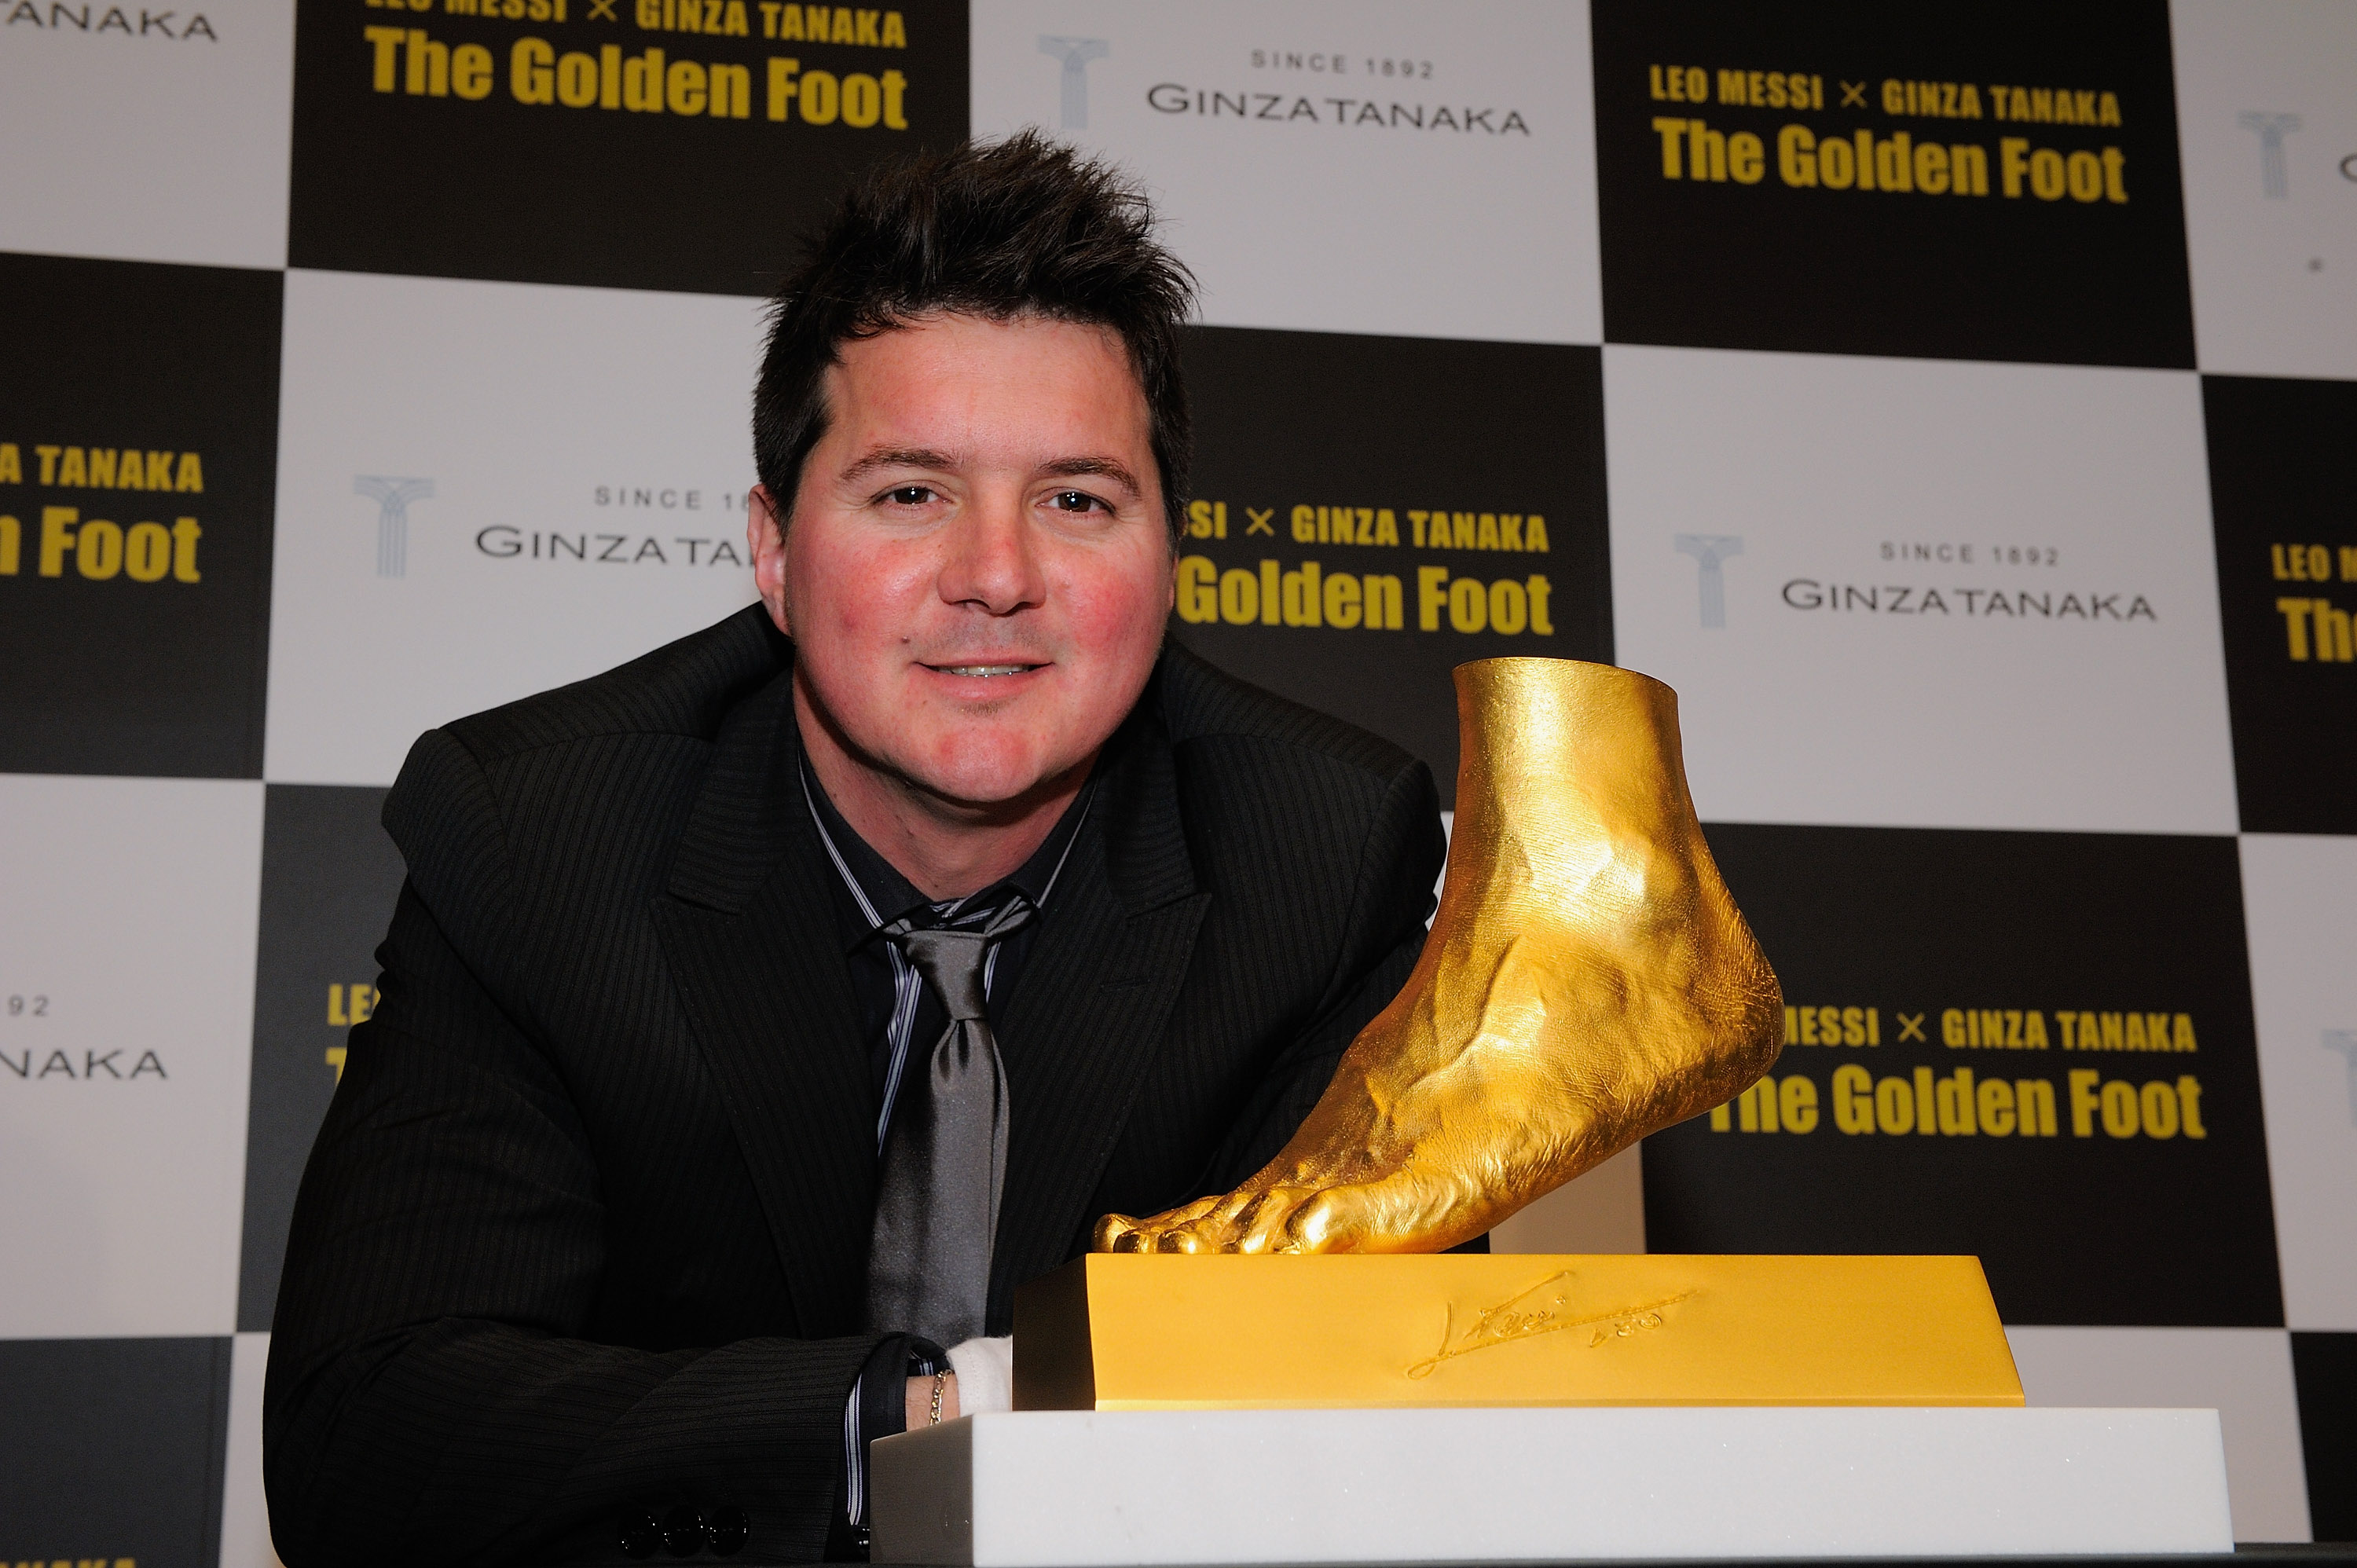 Rodrigo Messi, en 2013, recibió una réplica exacta de oro del pie izquierdo de su hermano Lionel en Japón (Koki Nagahama/Getty Images)